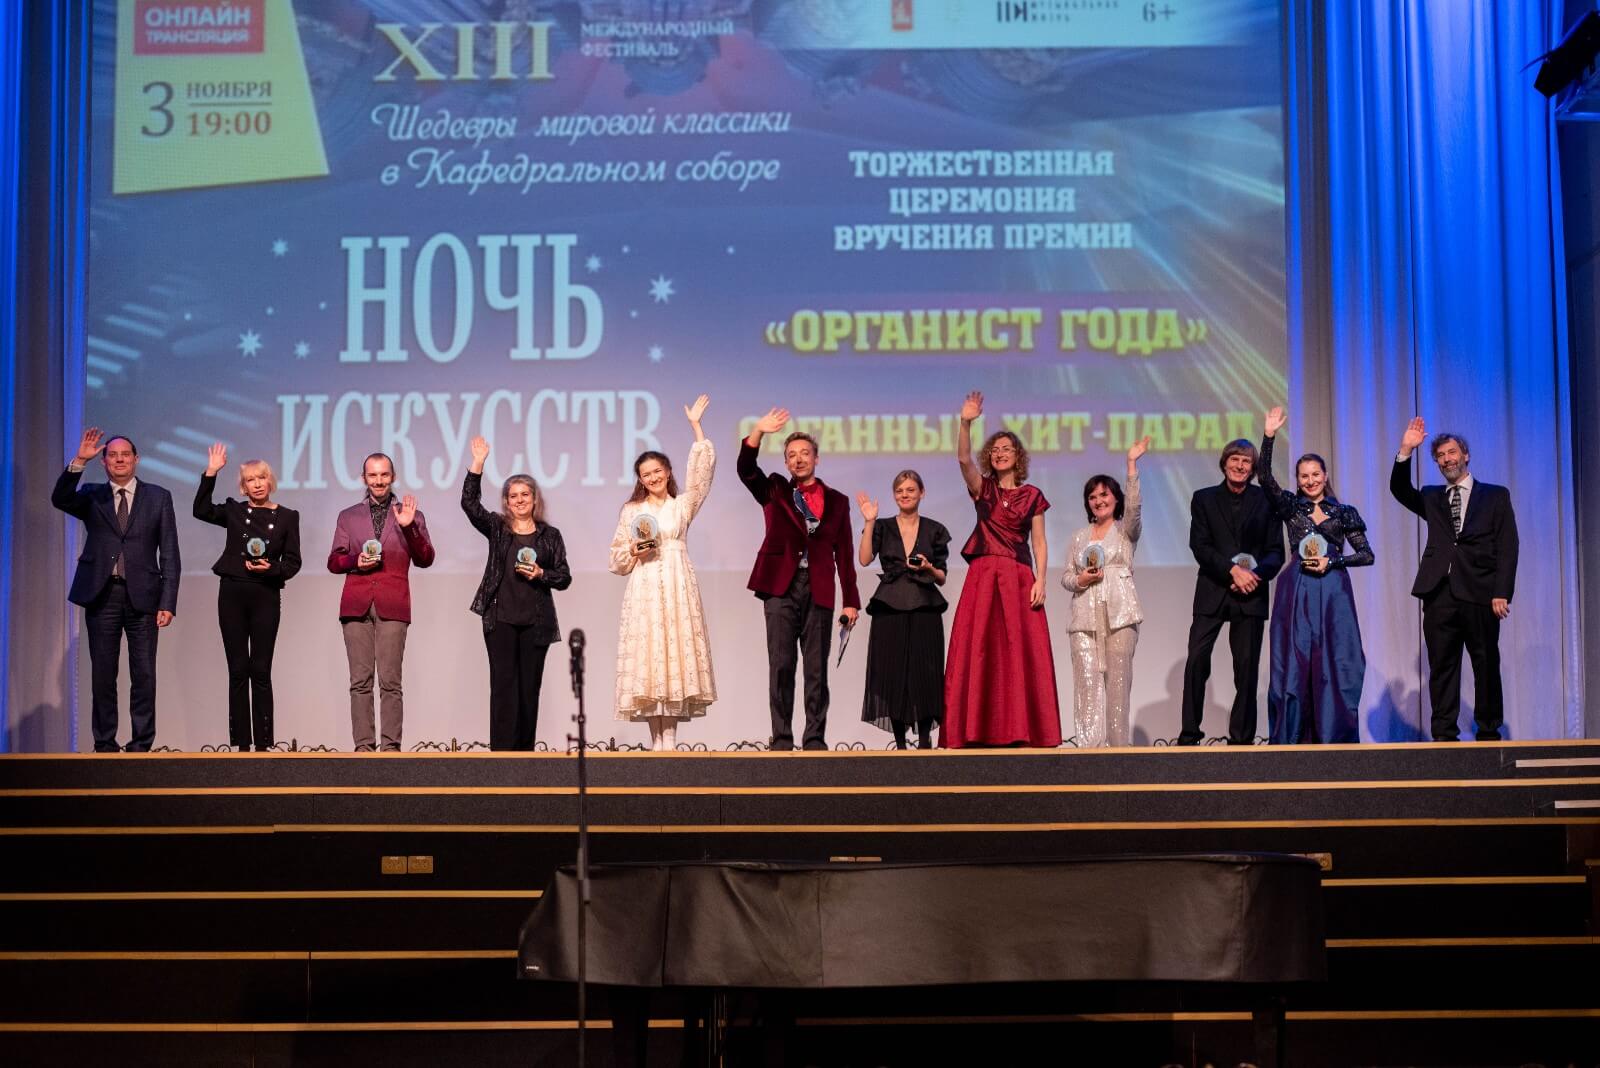 В Кафедральном соборе Калининграда вручили премию «Органист года», учрежденную при поддержке РМС